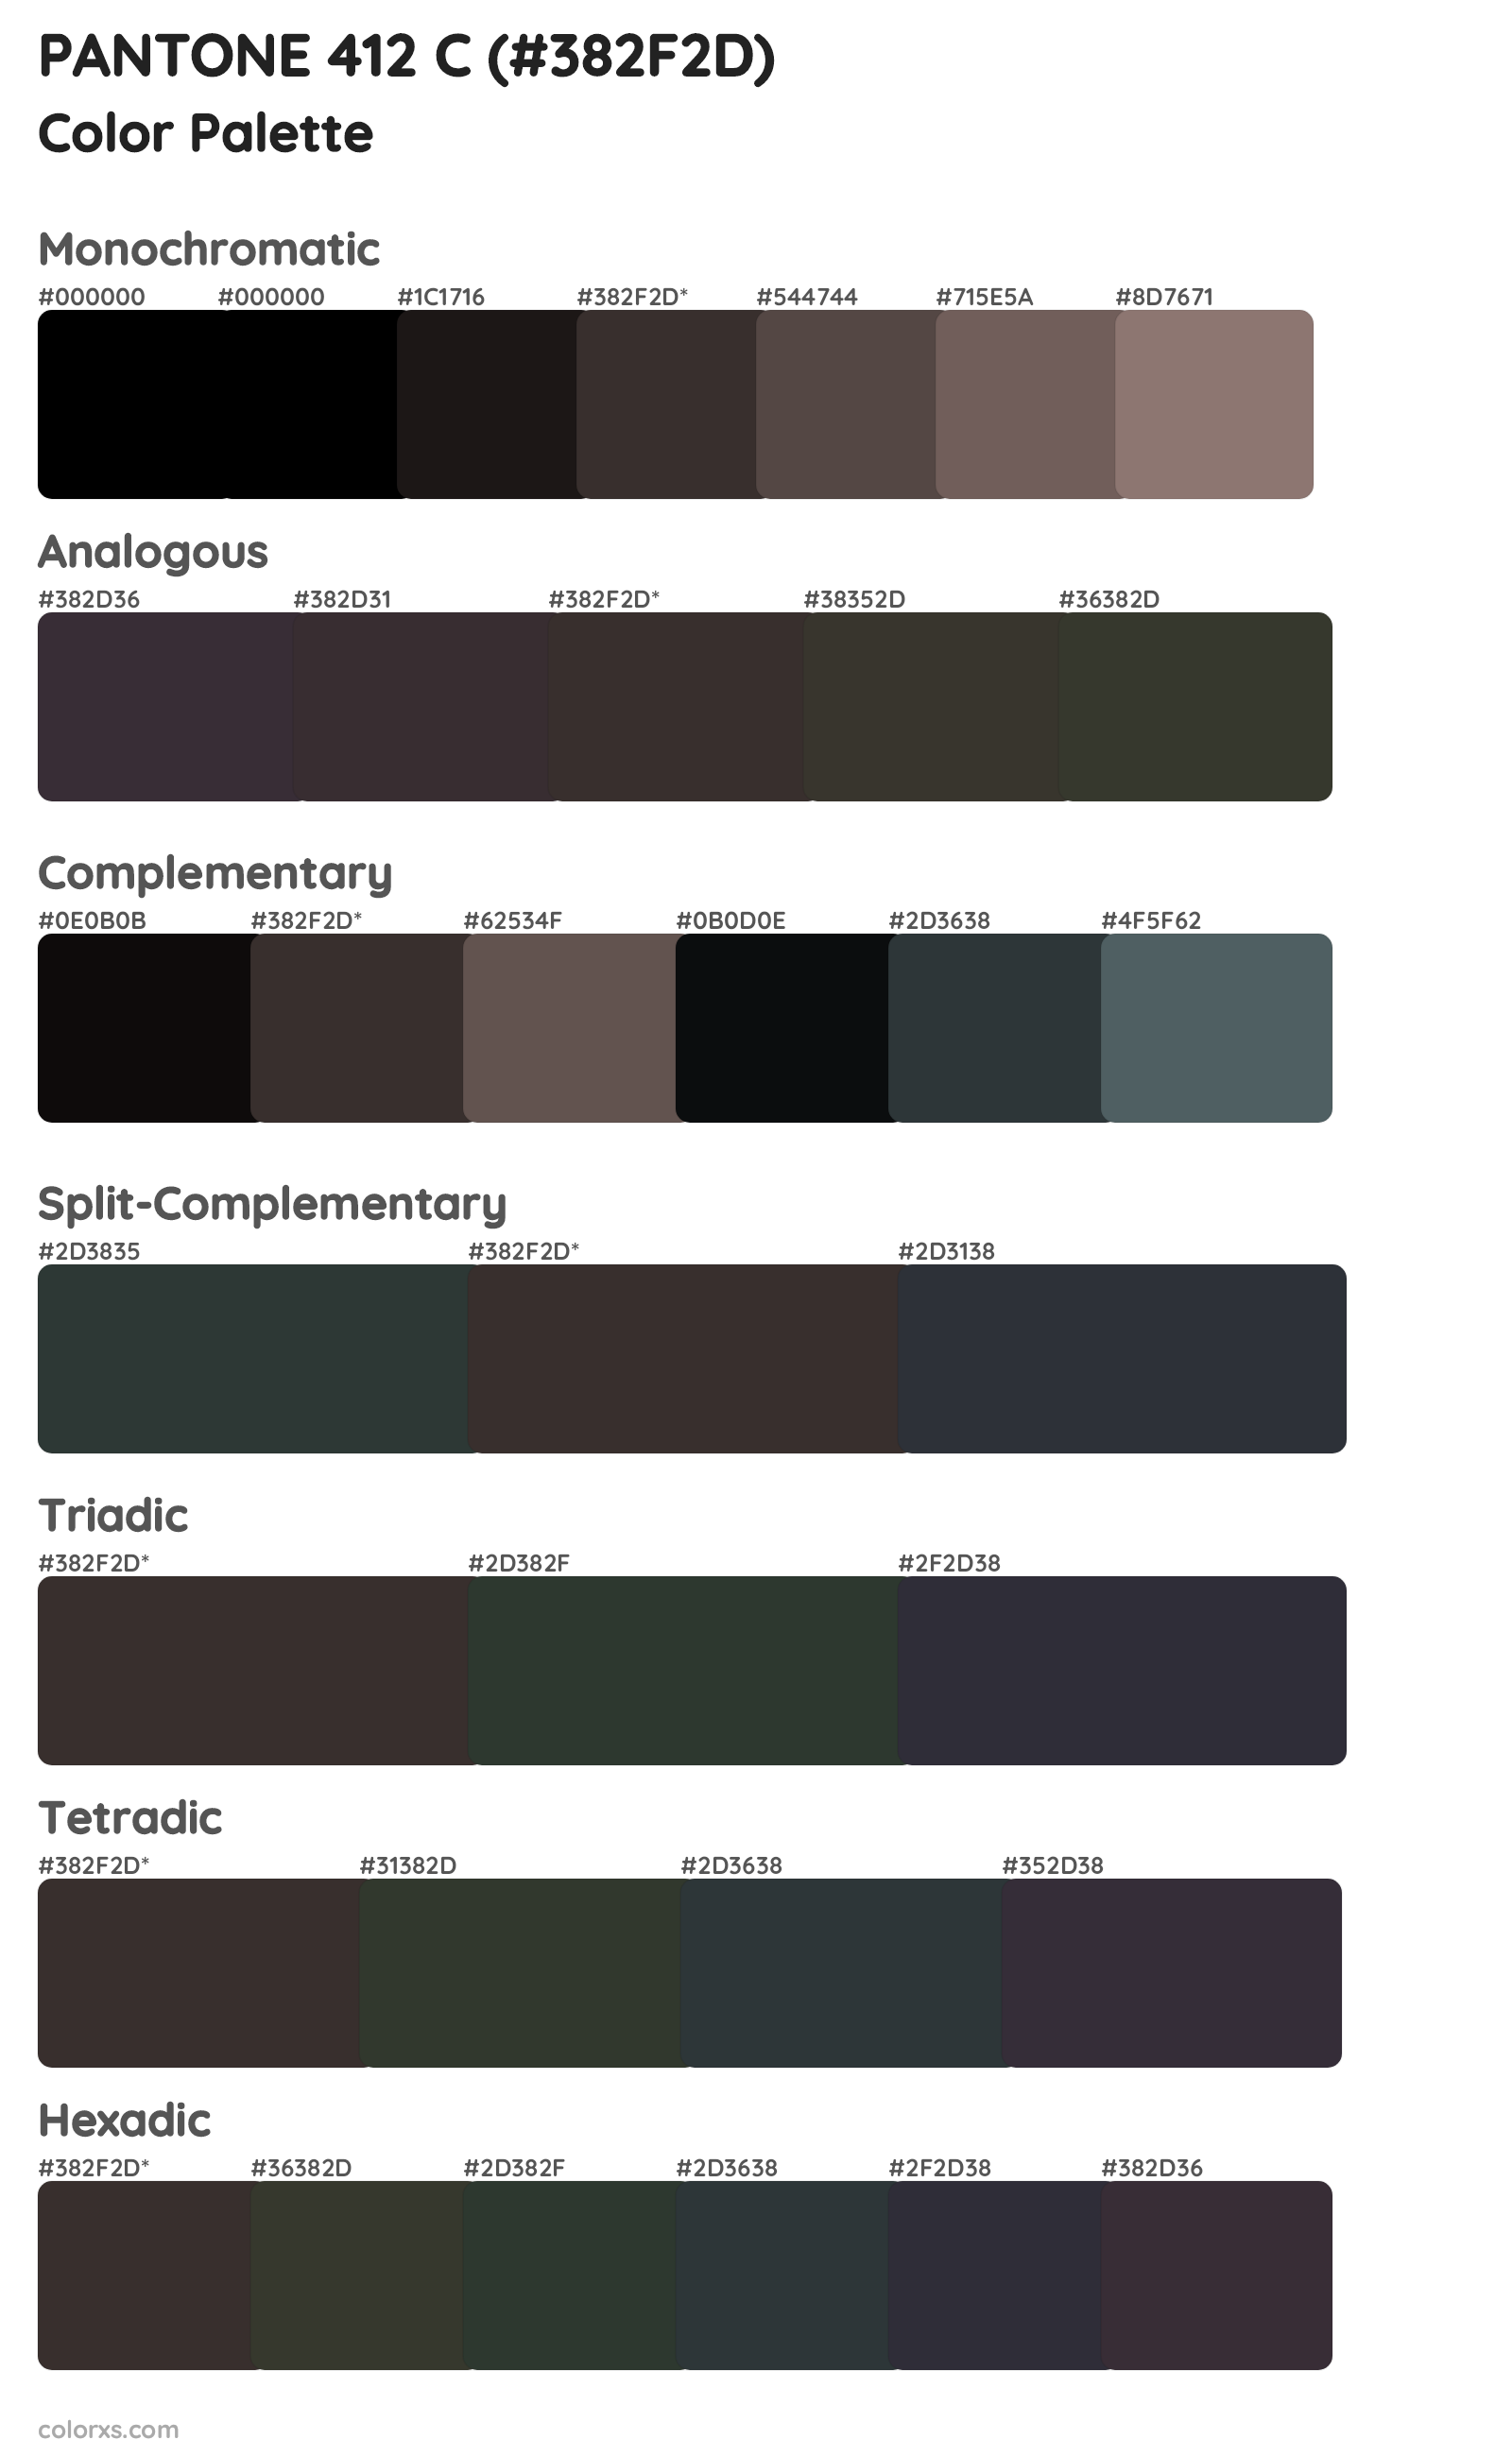 PANTONE 412 C Color Scheme Palettes